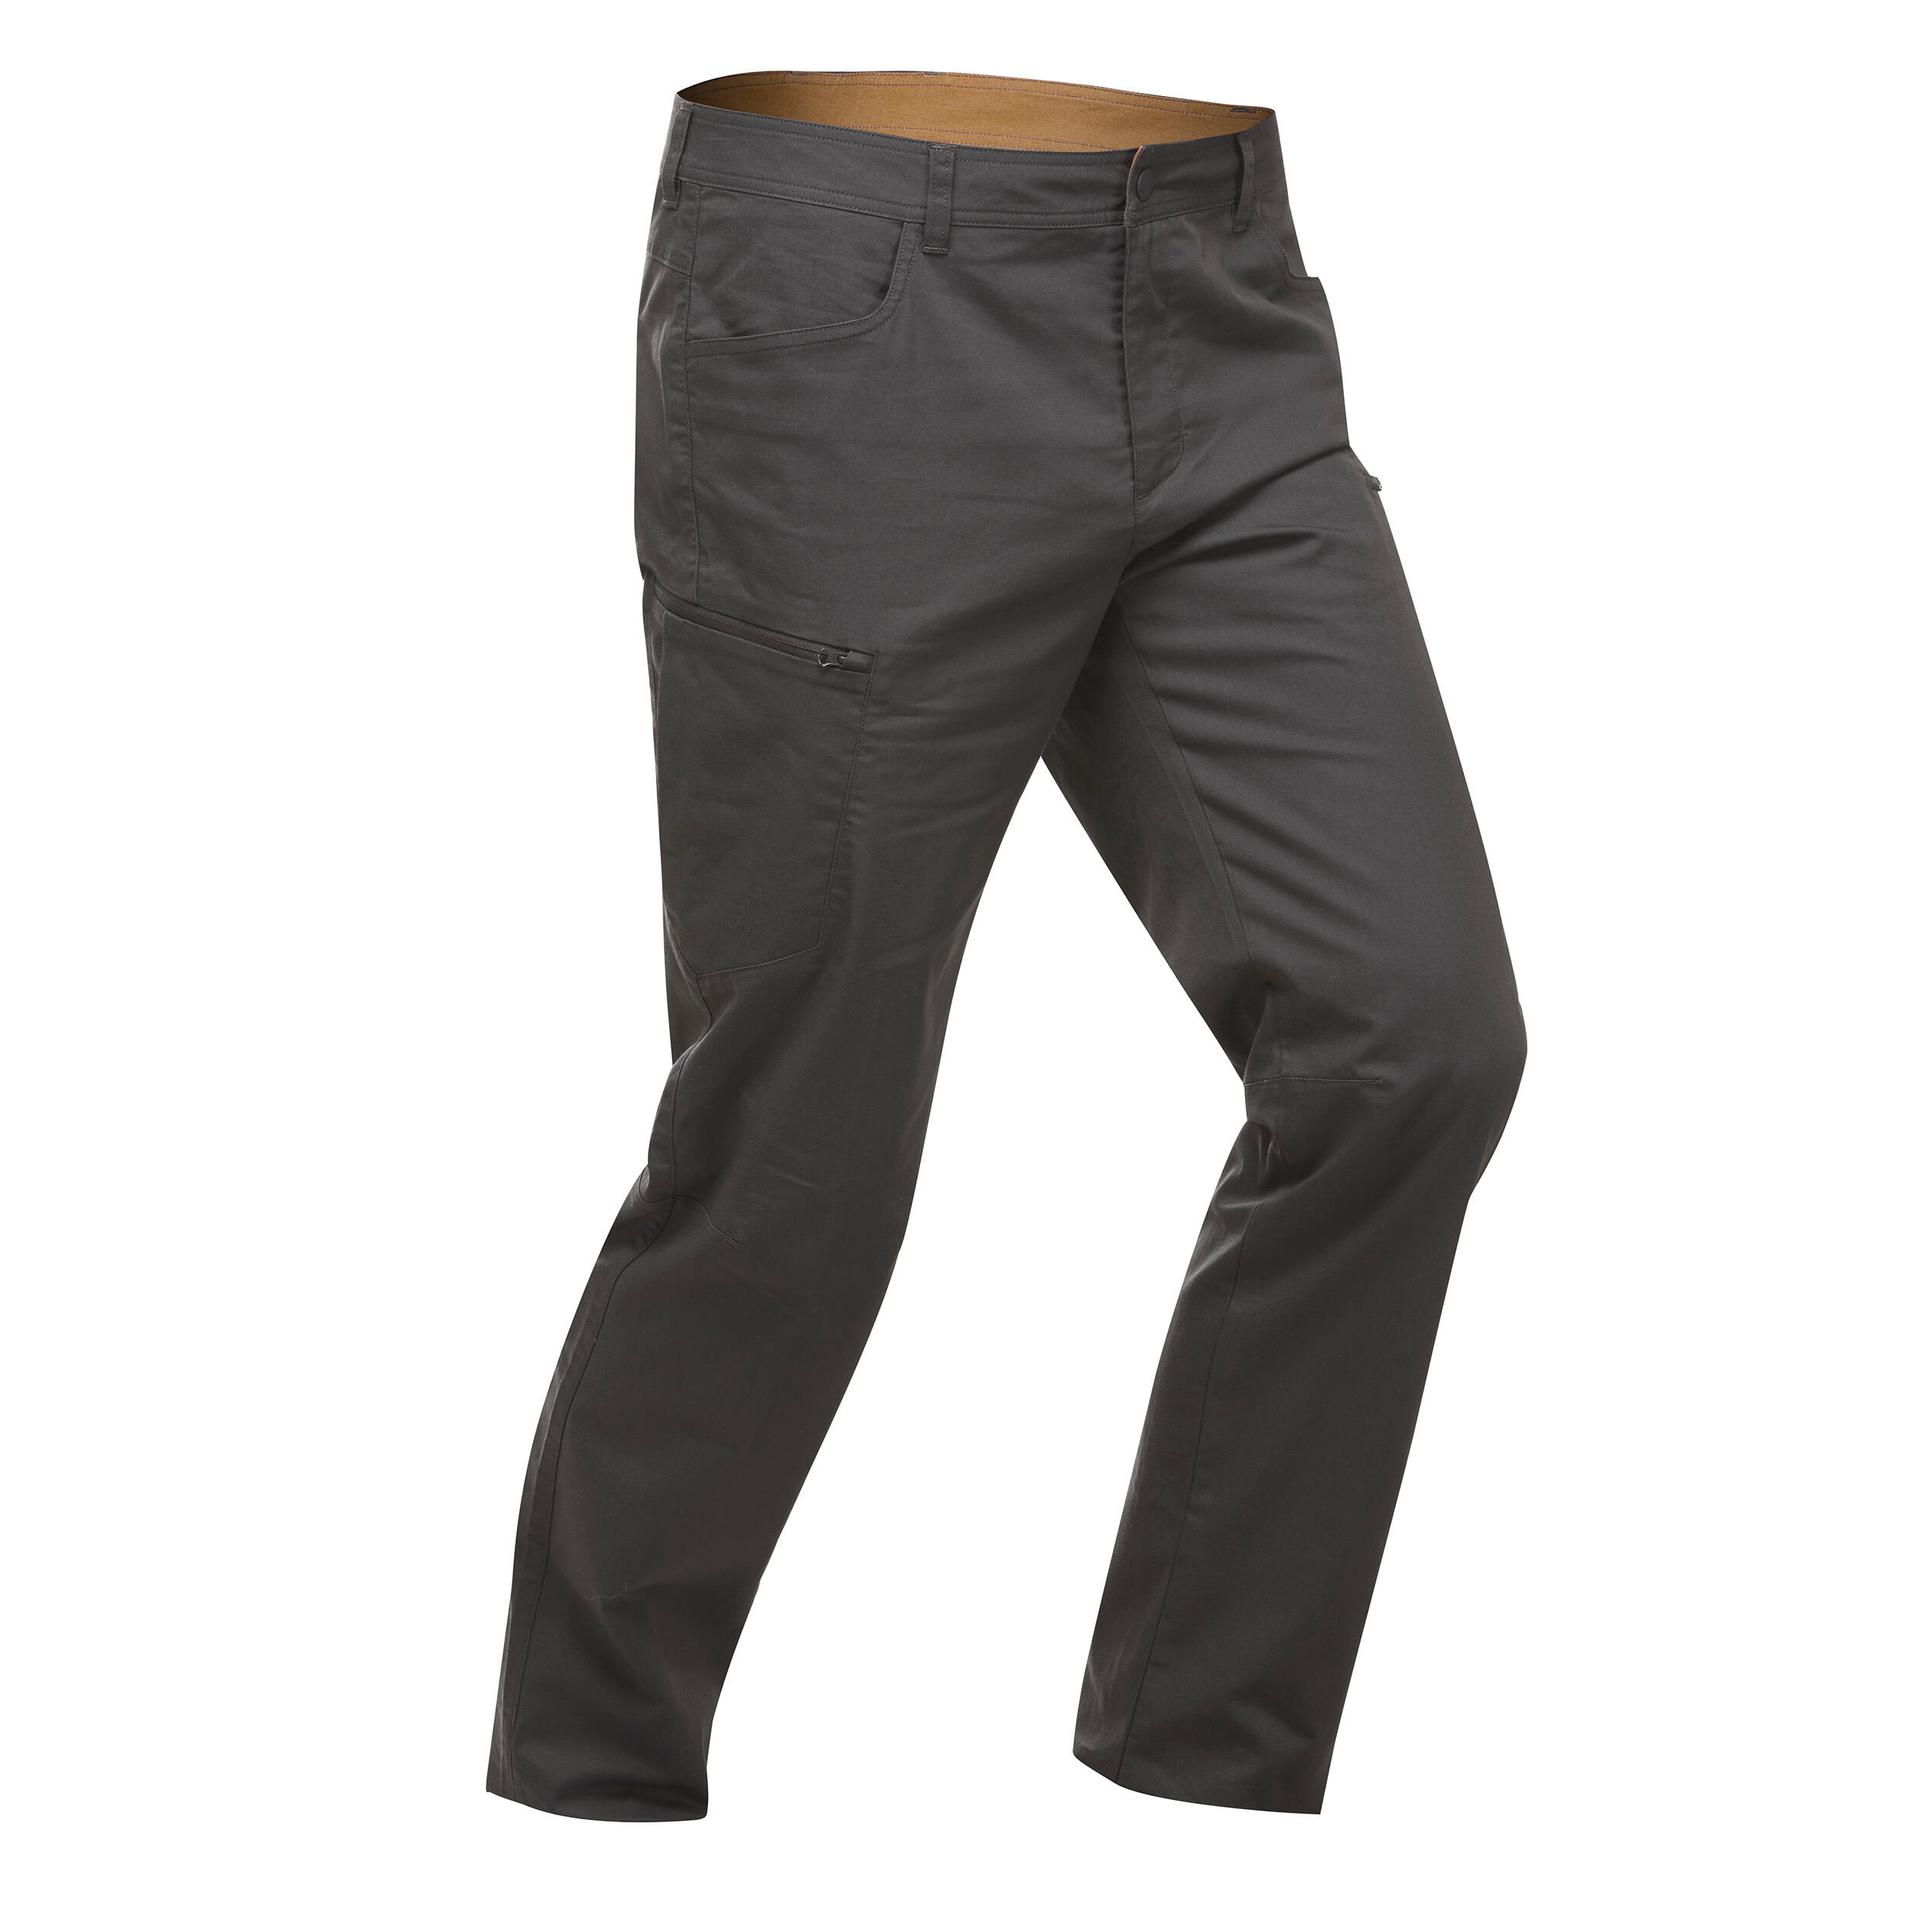 men's hiking trousers regular fit nh500 - grey